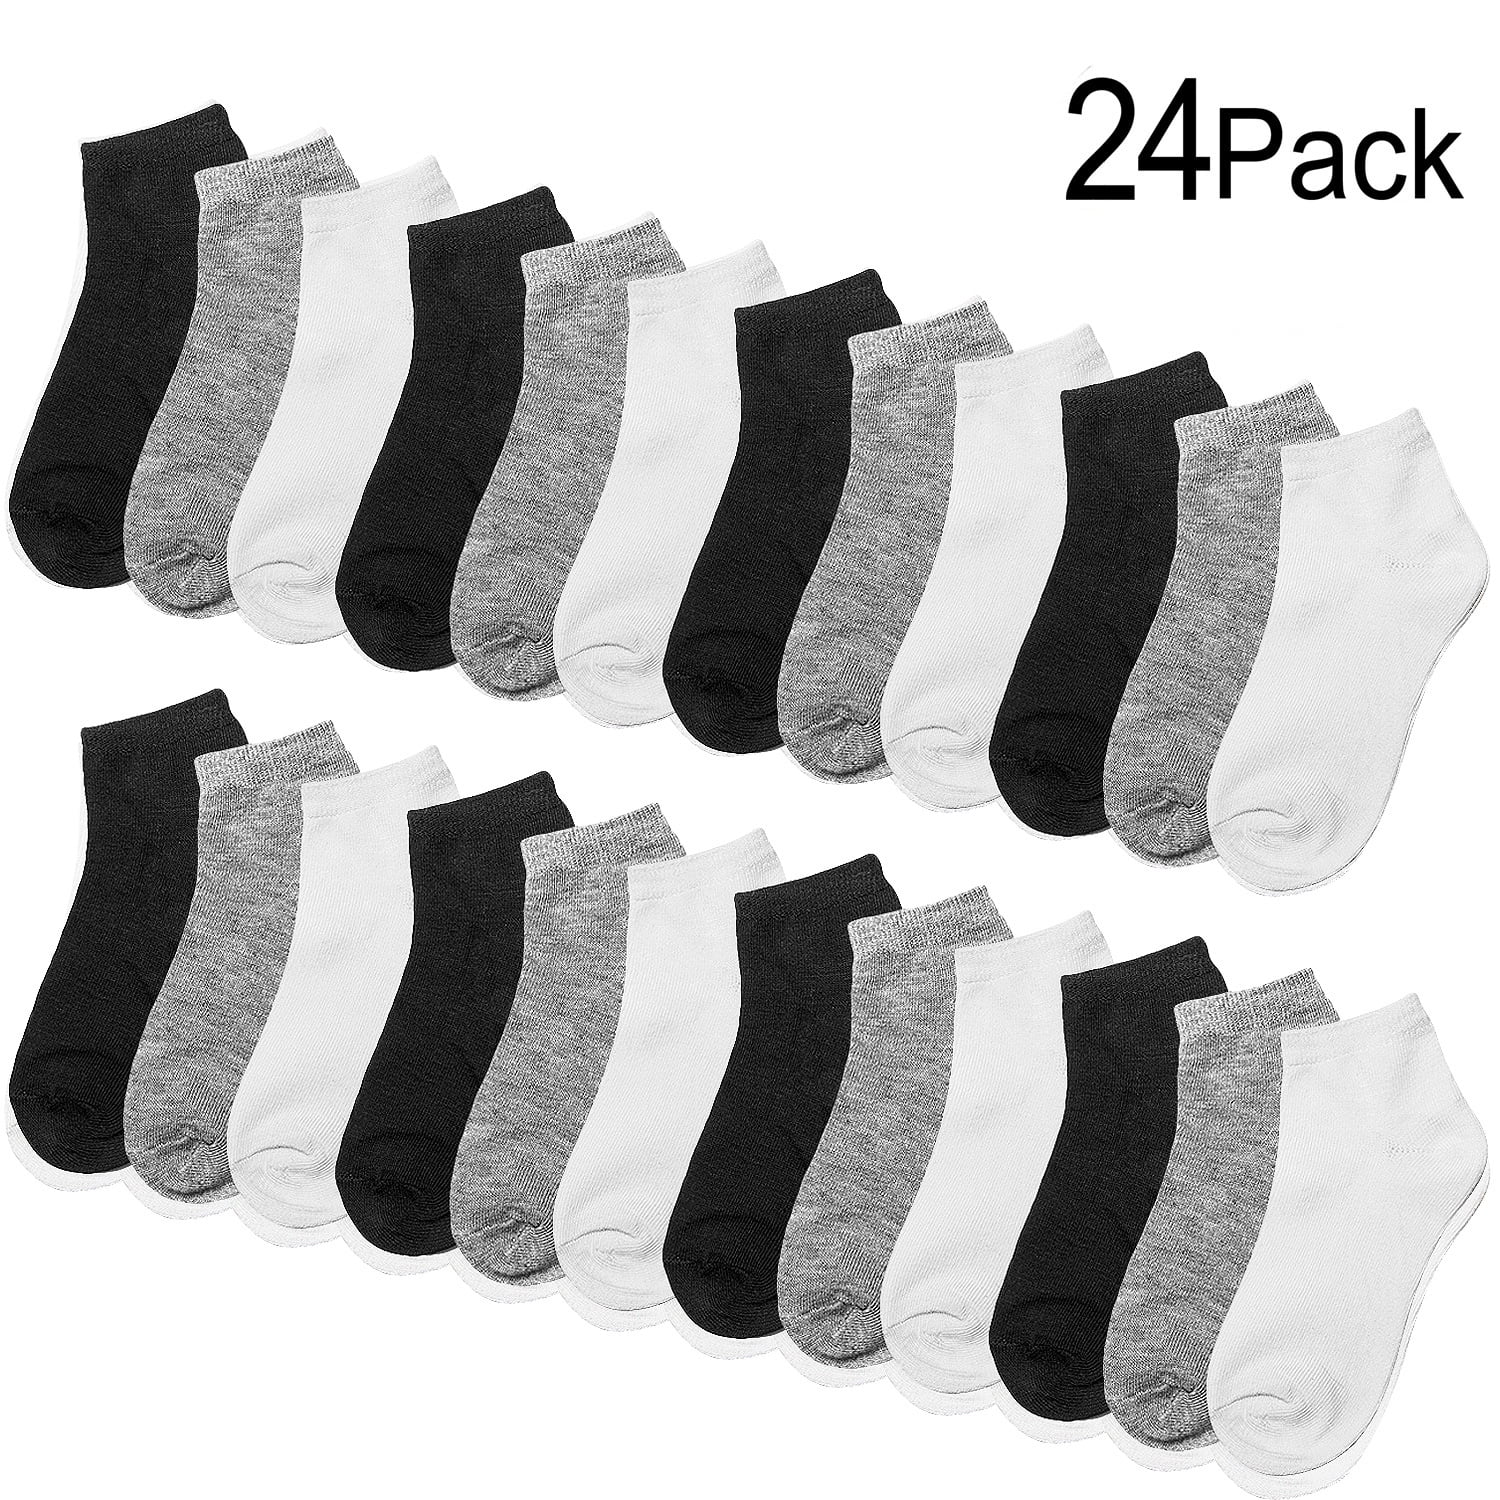 Toddler Boys Keds Brand Unisex Black 4 pack Crew Socks Size 2T-4T 